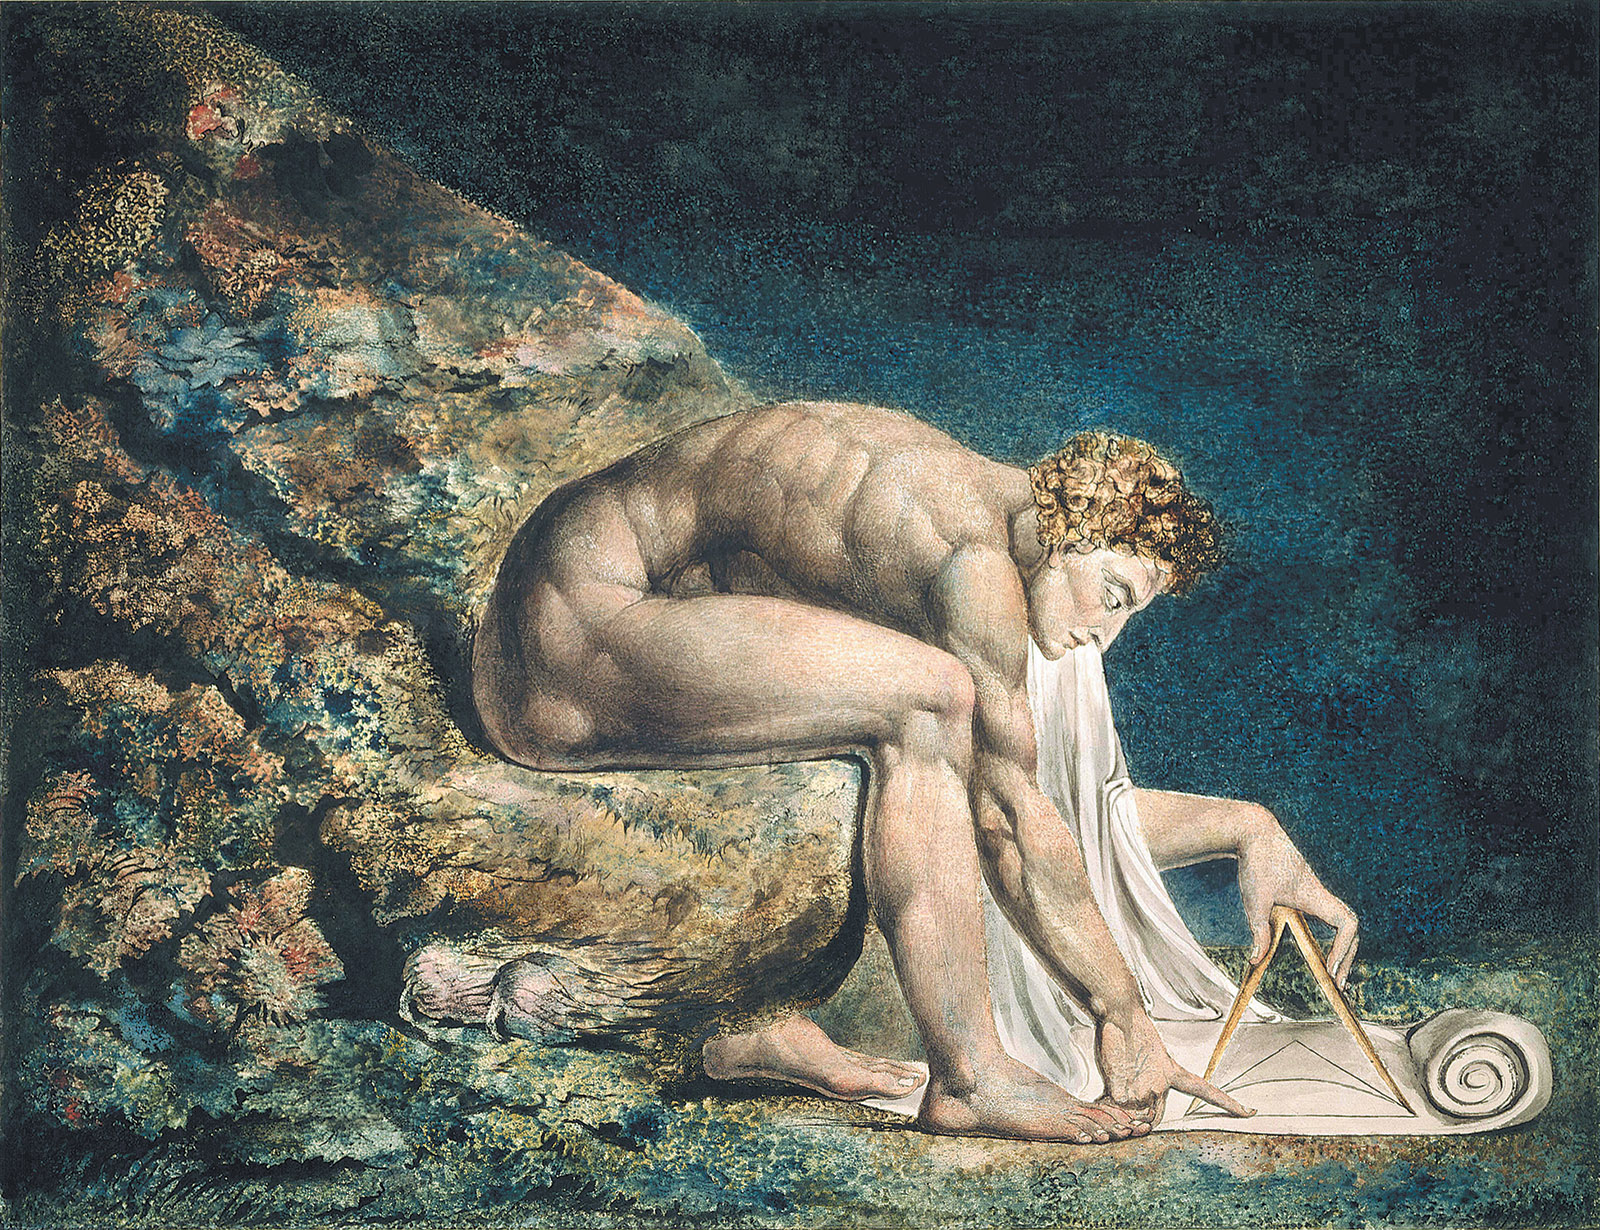 William Blake: Newton, 1795